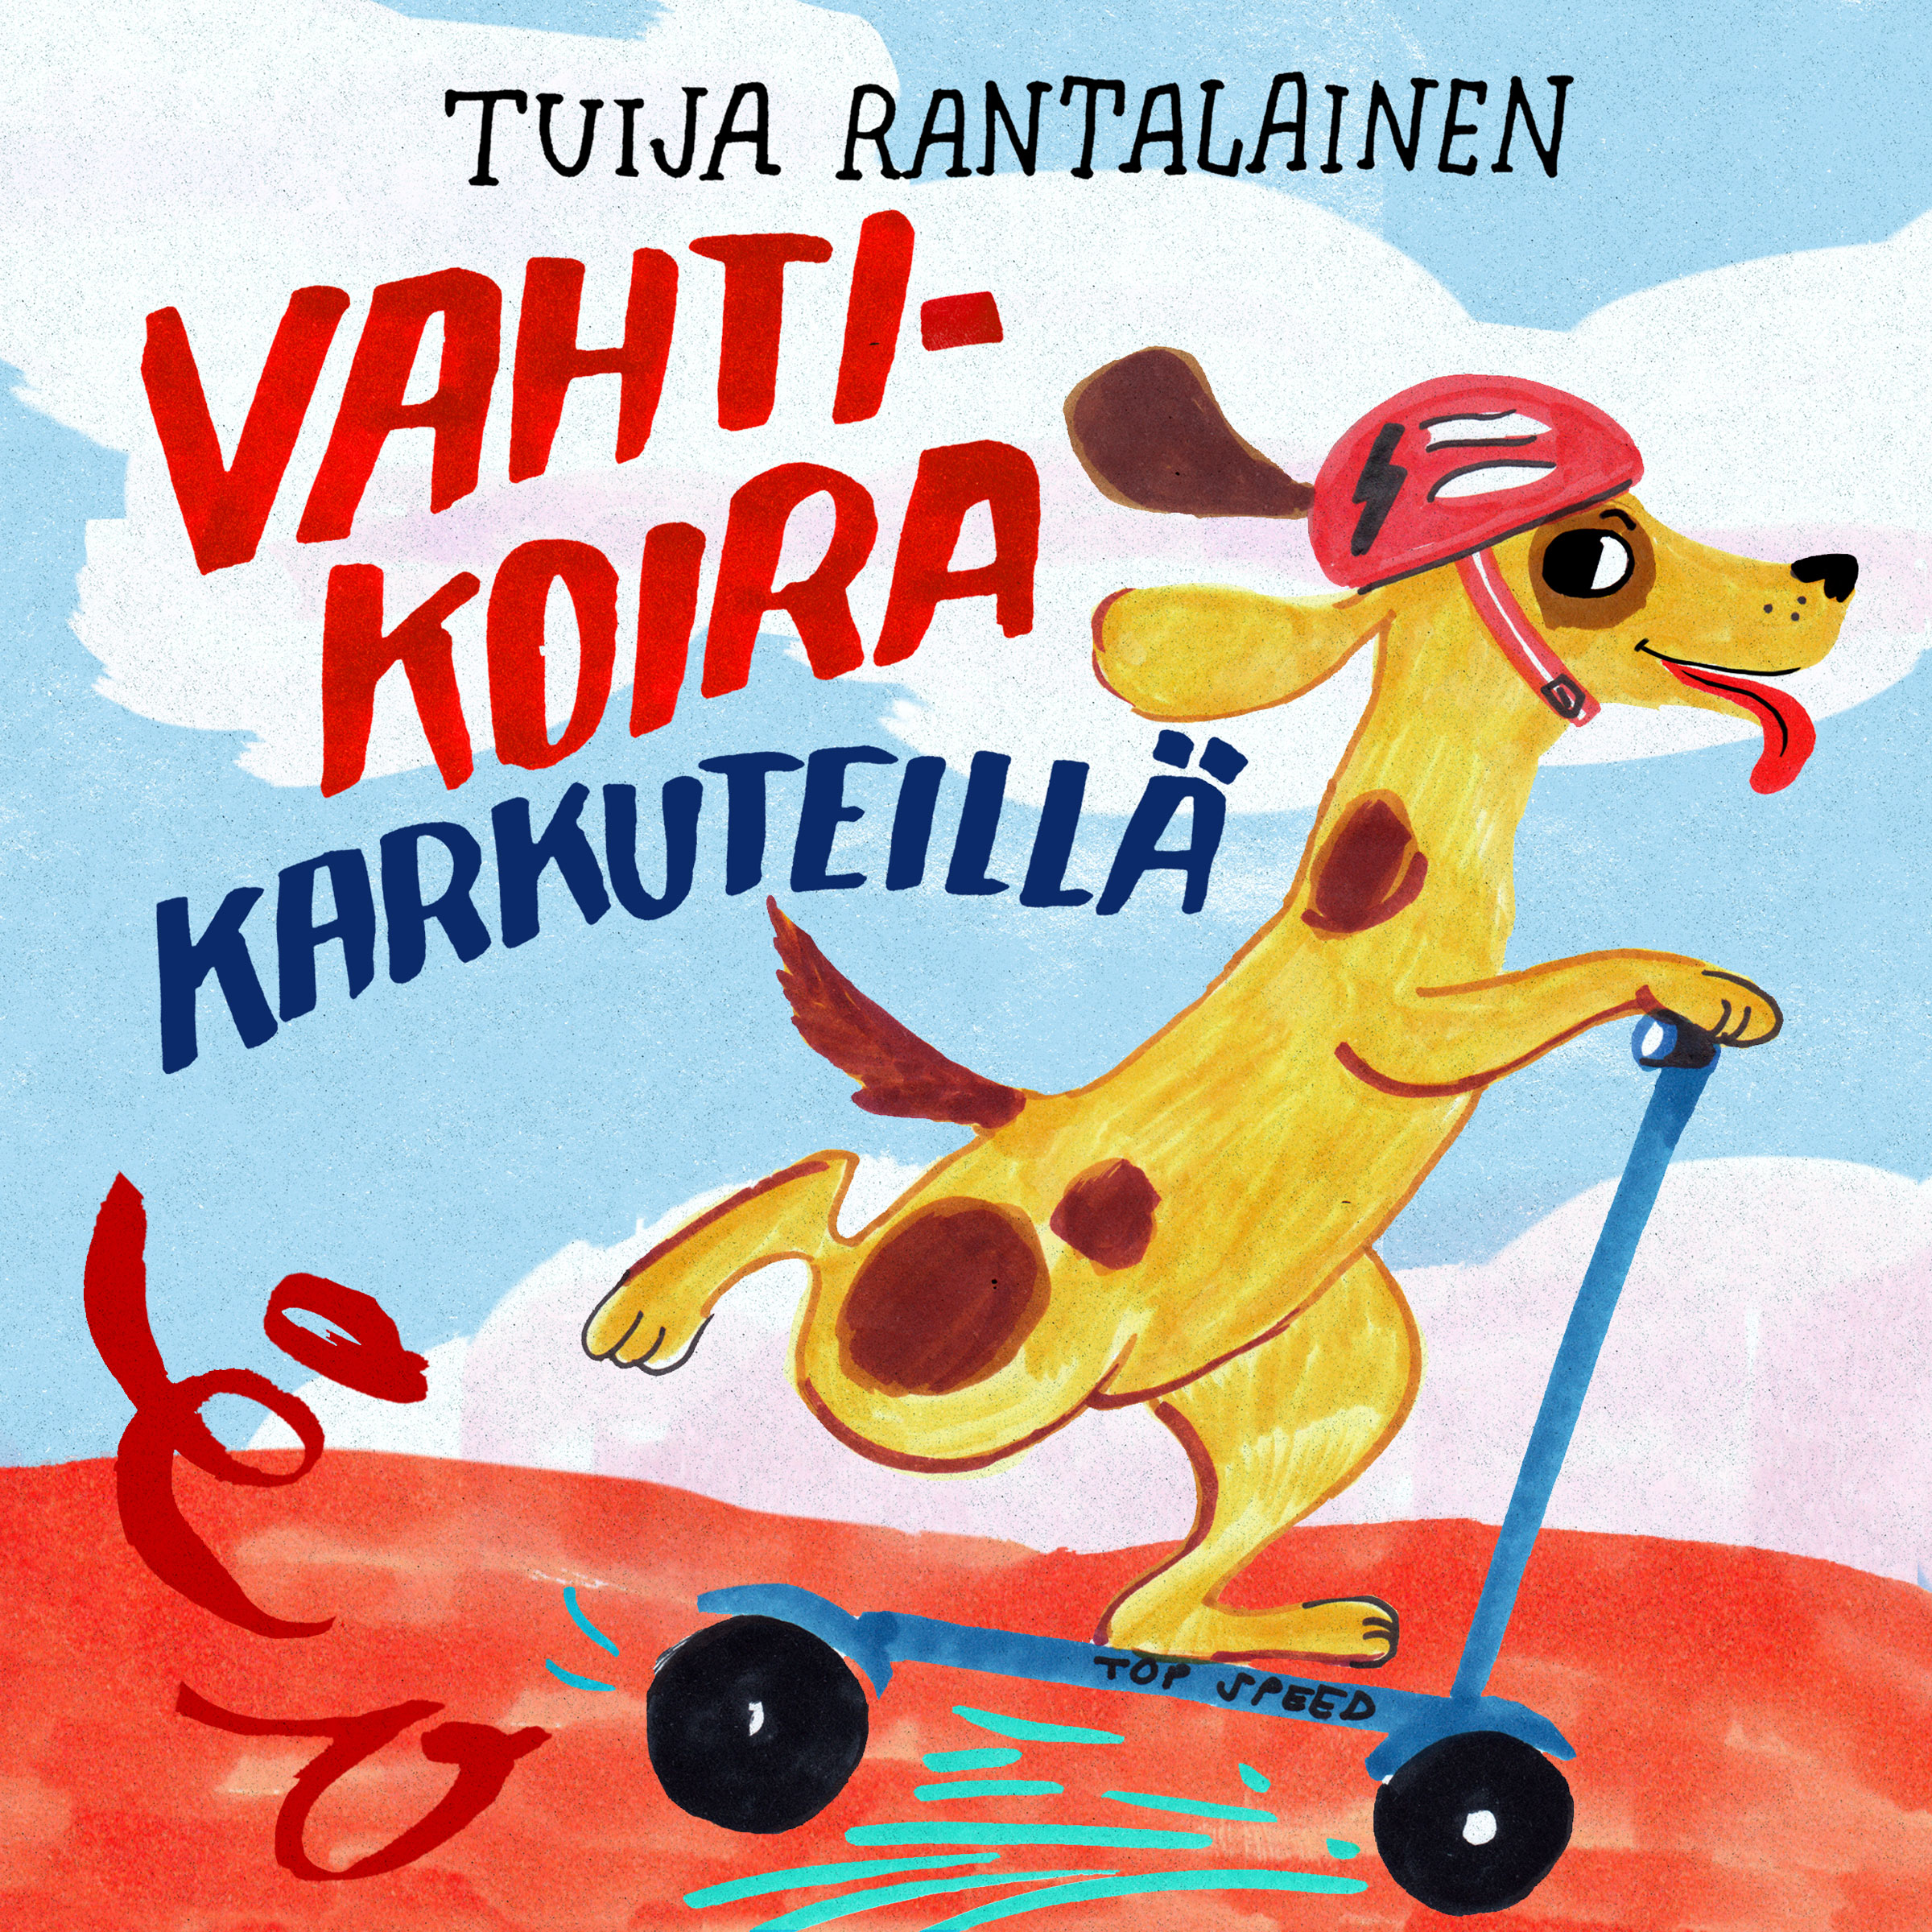 Tuija Rantalainen - Vahtikoira karkuteill  - CD